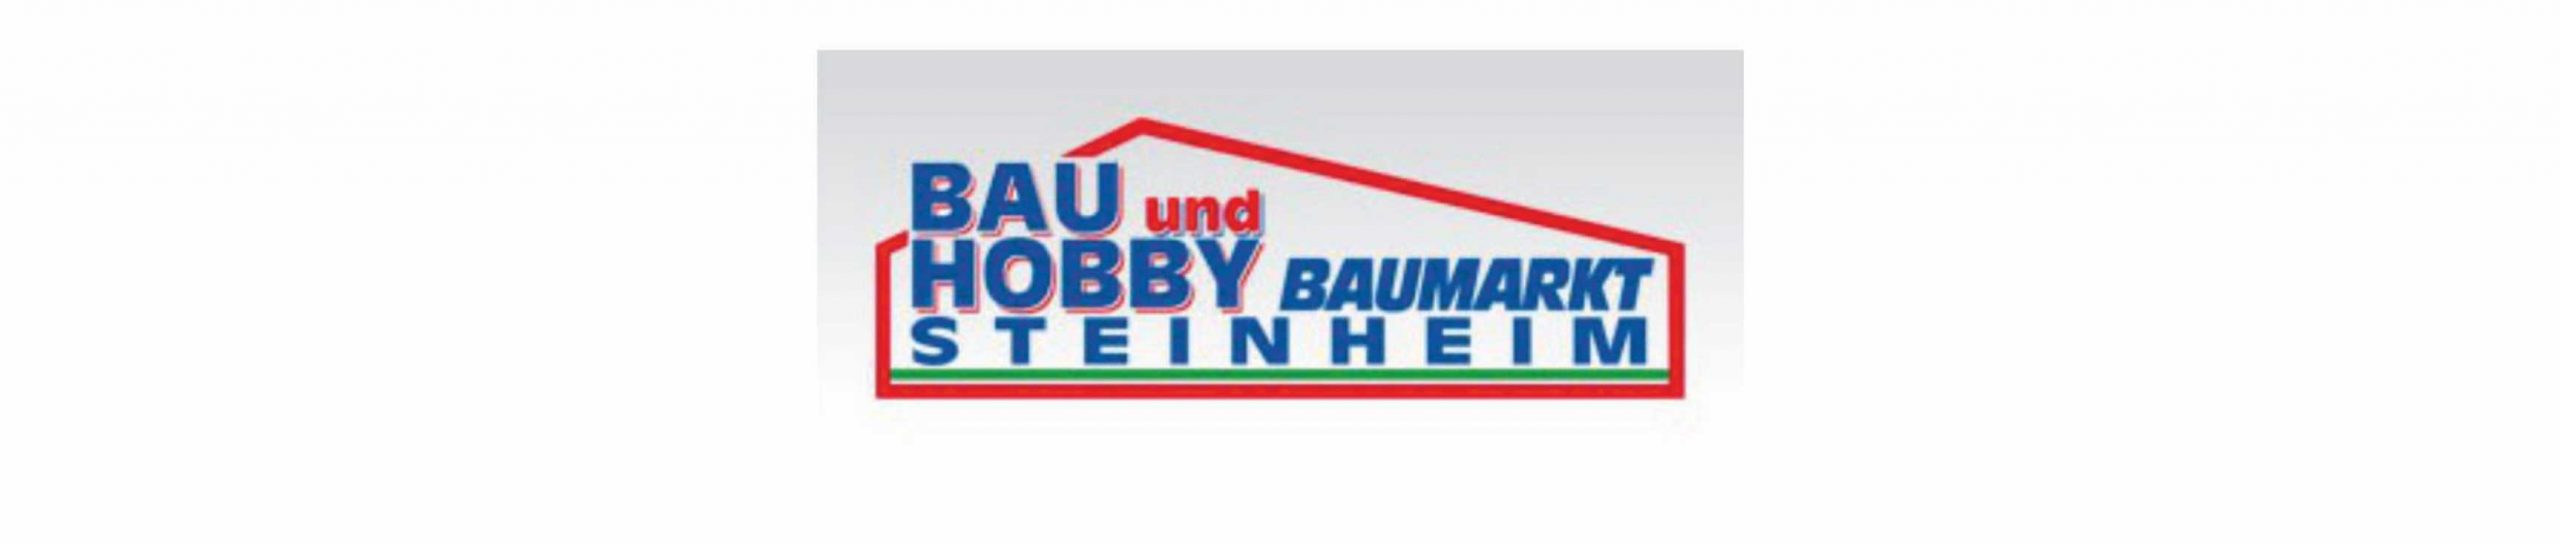 Bau und Hobby Baumarkt GmbH - Steinheim